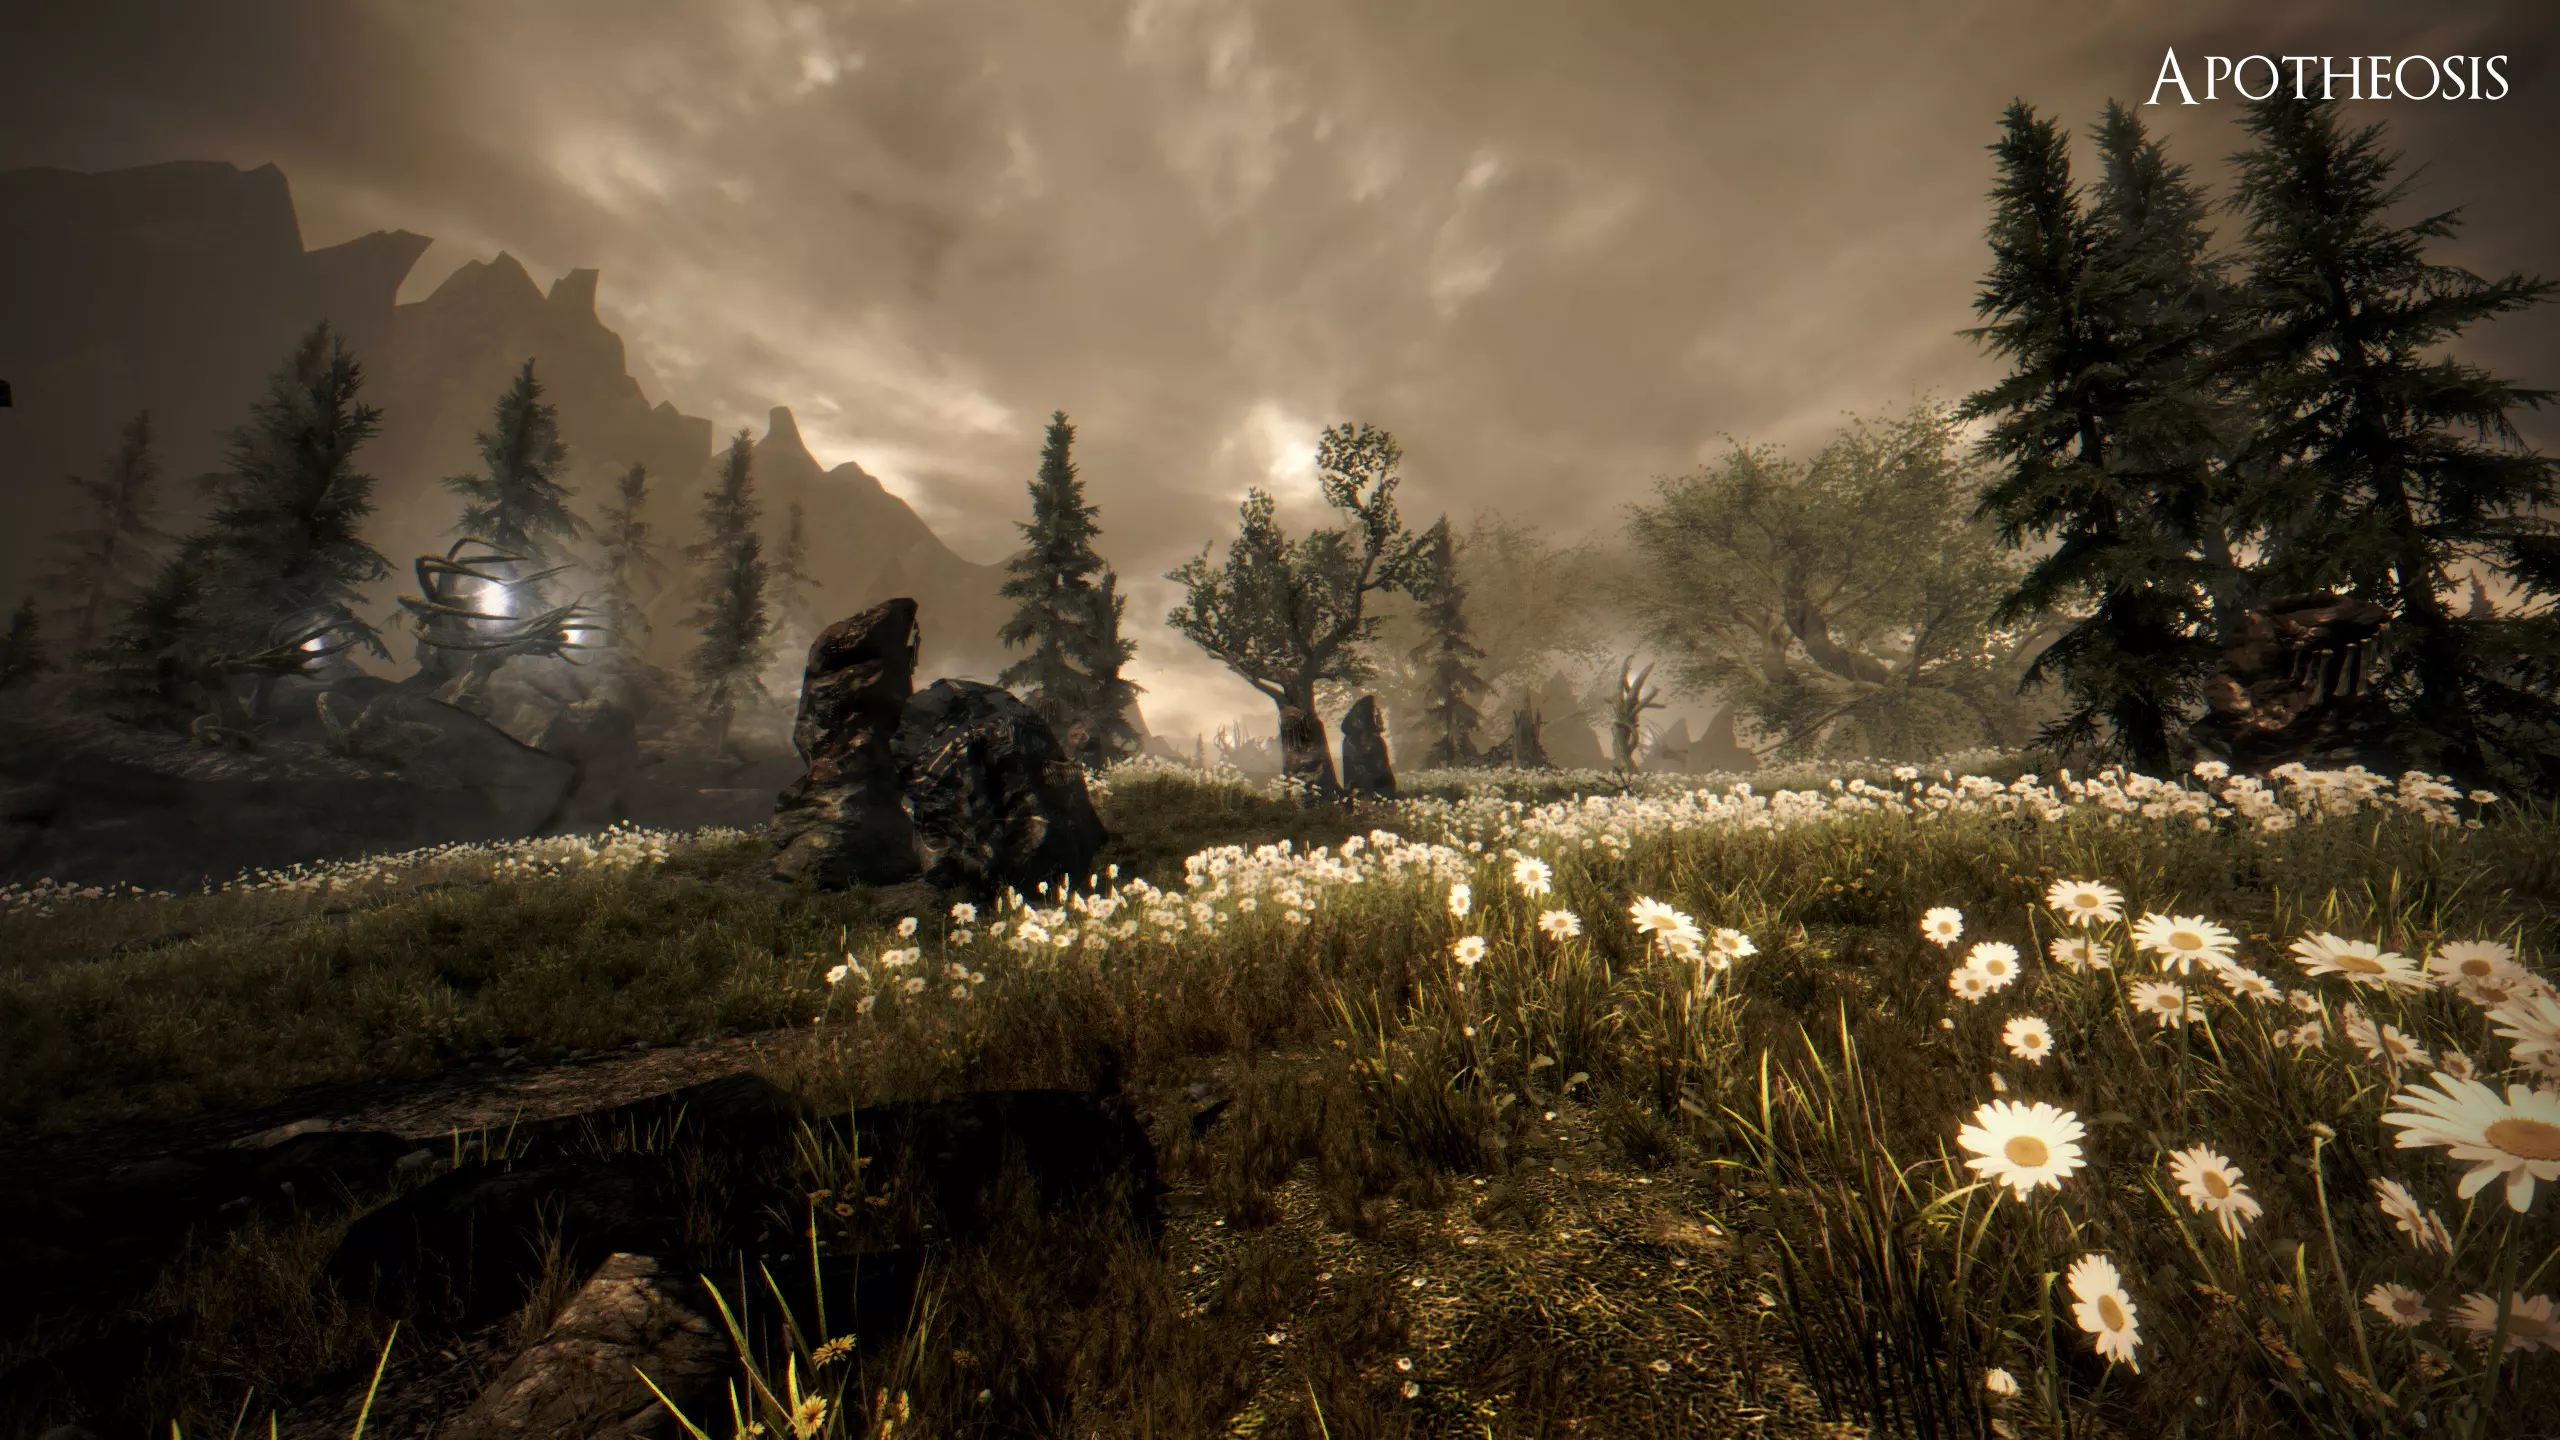 Описание
Официальный канал для Apotheosis, готовится к расширению DLC для The Elder Scrolls V: Skyrim, которое добавит несколько полностью восстановленных областей Обливиона.